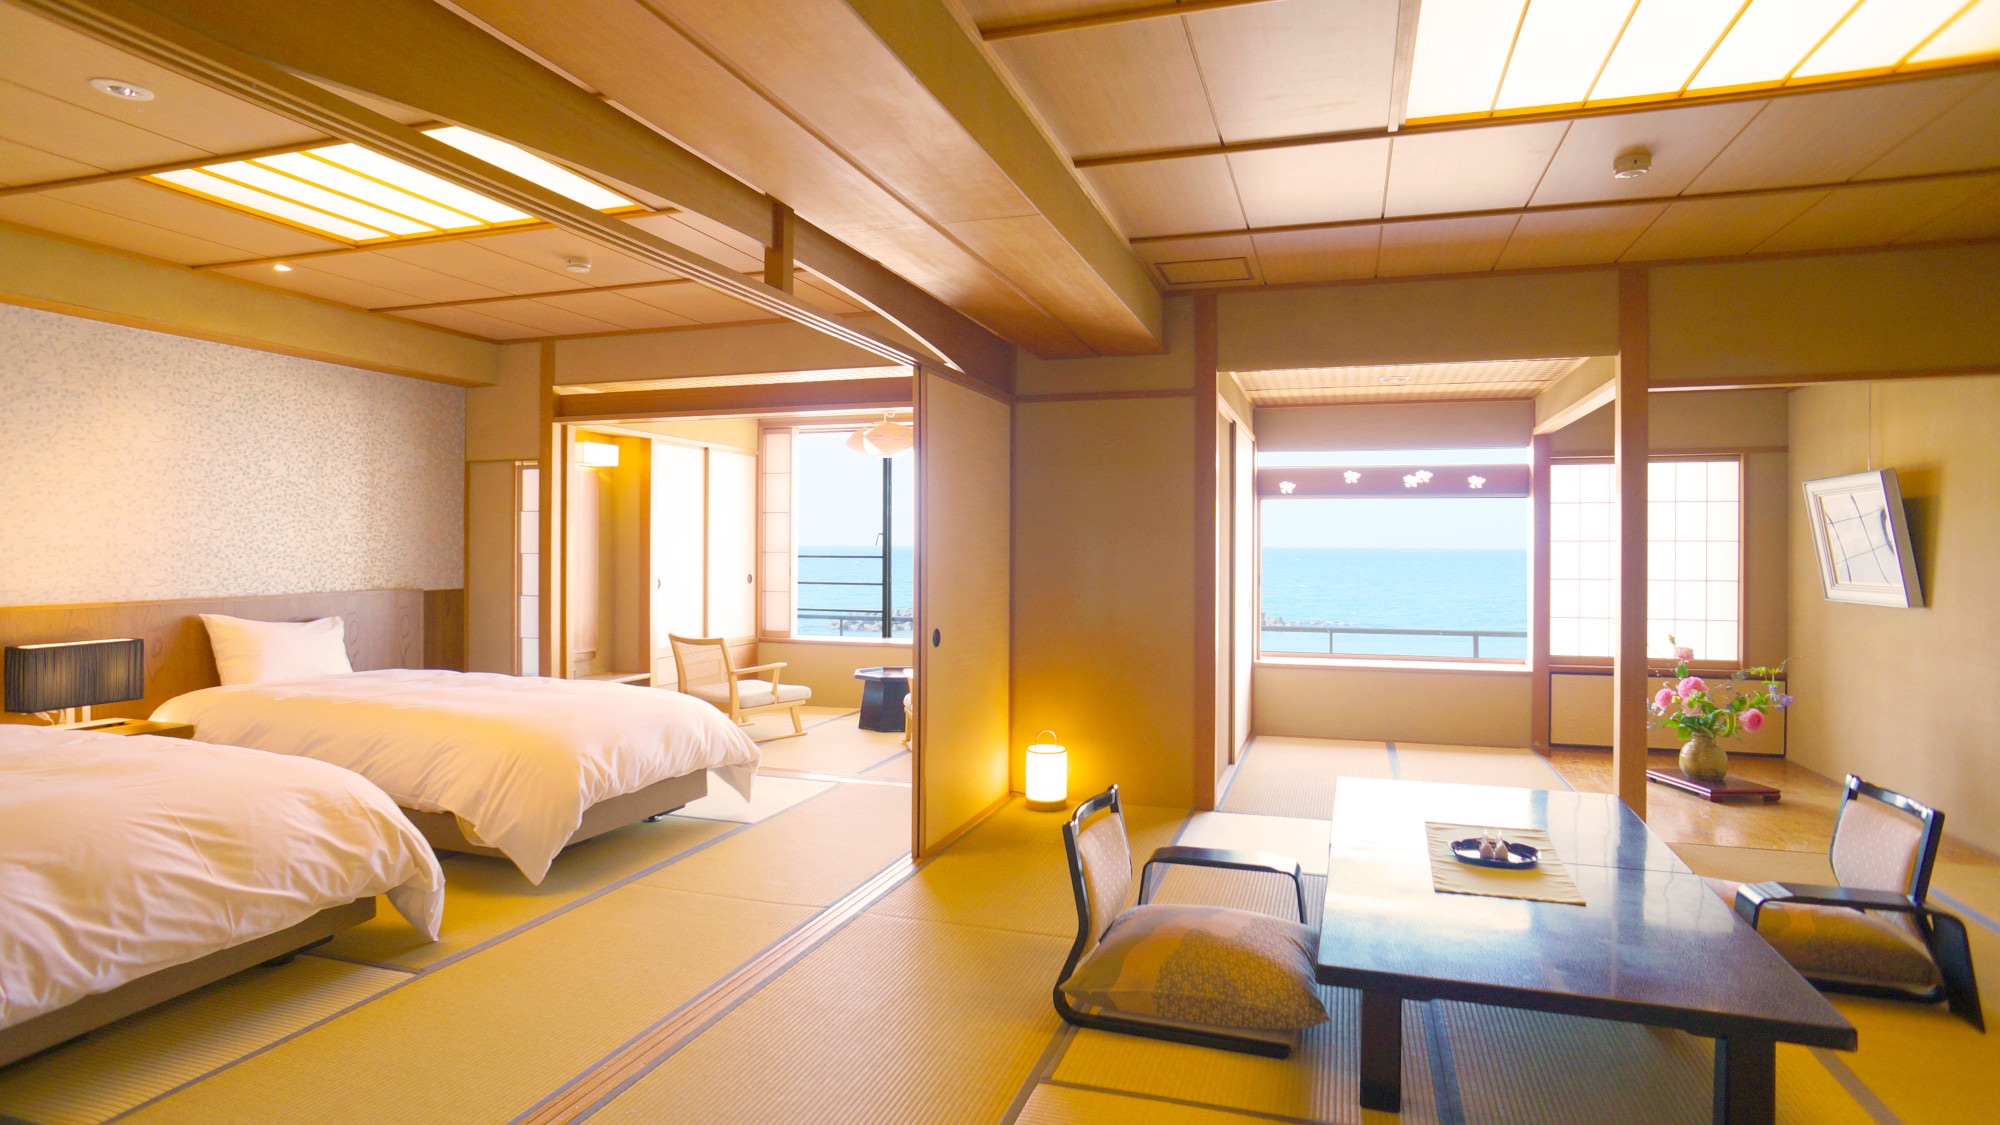 日式房间12.5榻榻米+双床+桧木浴缸